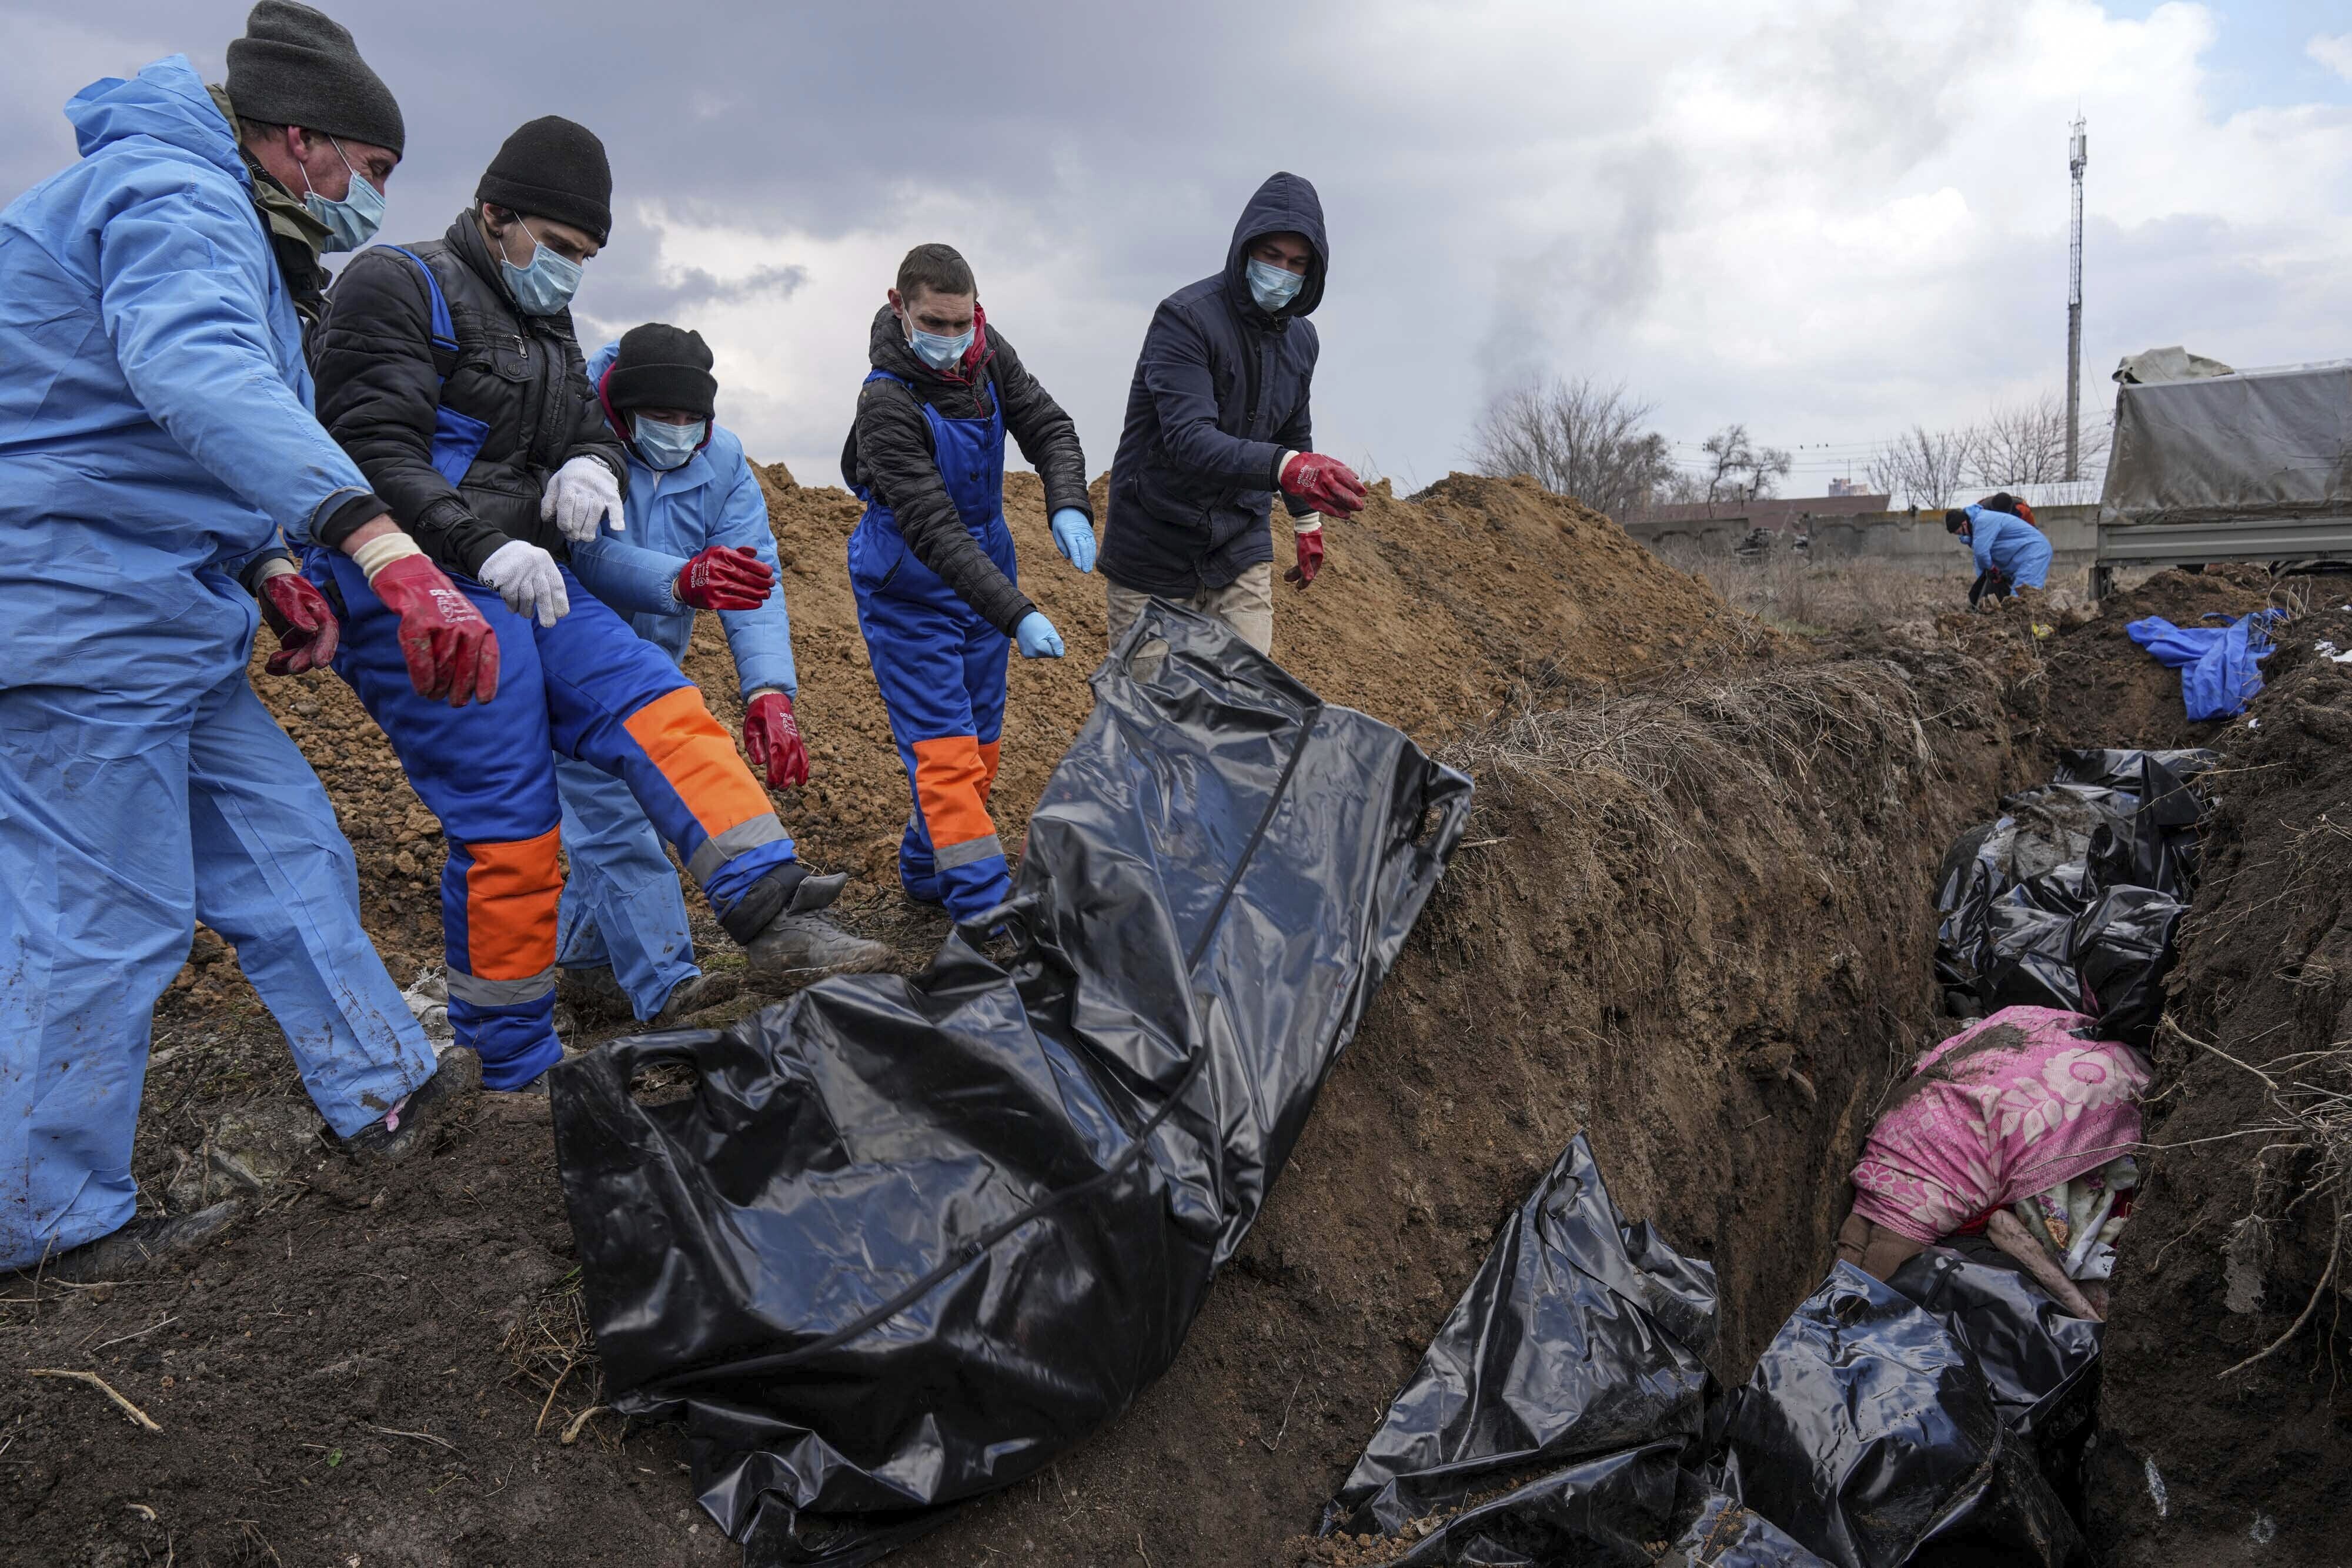 Los cadáveres son colocados en una fosa común en las afueras de Mariupol, Ucrania, el miércoles 9 de marzo de 2022, ya que la gente no puede enterrar a sus muertos debido al fuerte bombardeo de las fuerzas rusas. (AP/Evgeniy Maloletka)